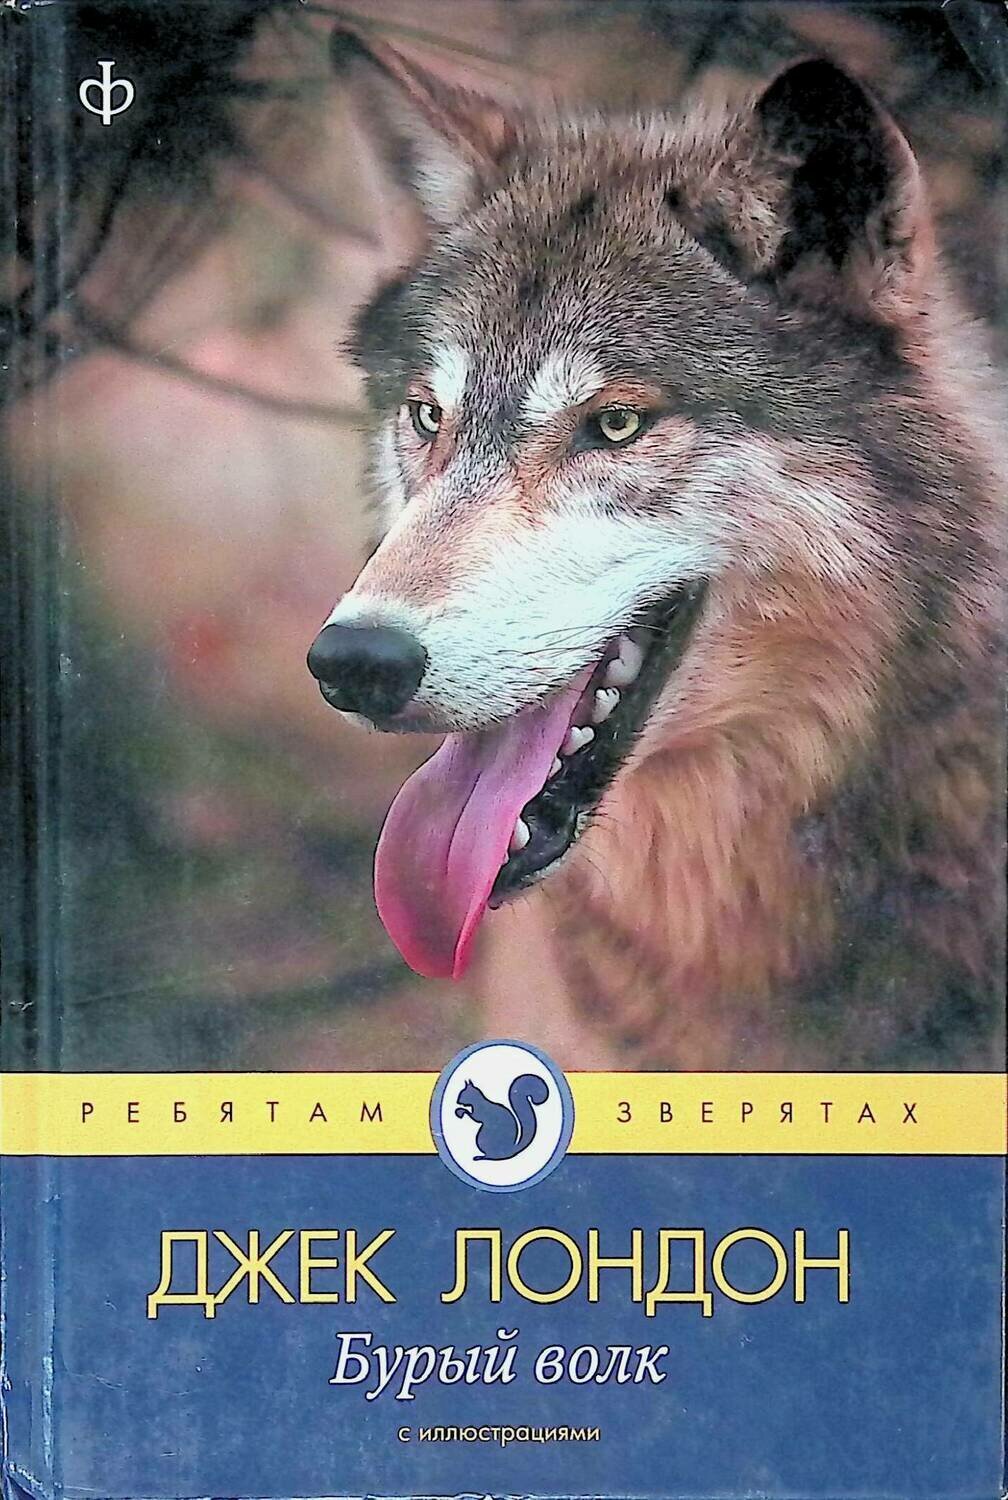 Читать волков том 1. Бурый волк Джек Лондон книга. Дж Лондон бурый волк. Книга про волка Джек Лондон. Белый волк Джек Лондон книга.